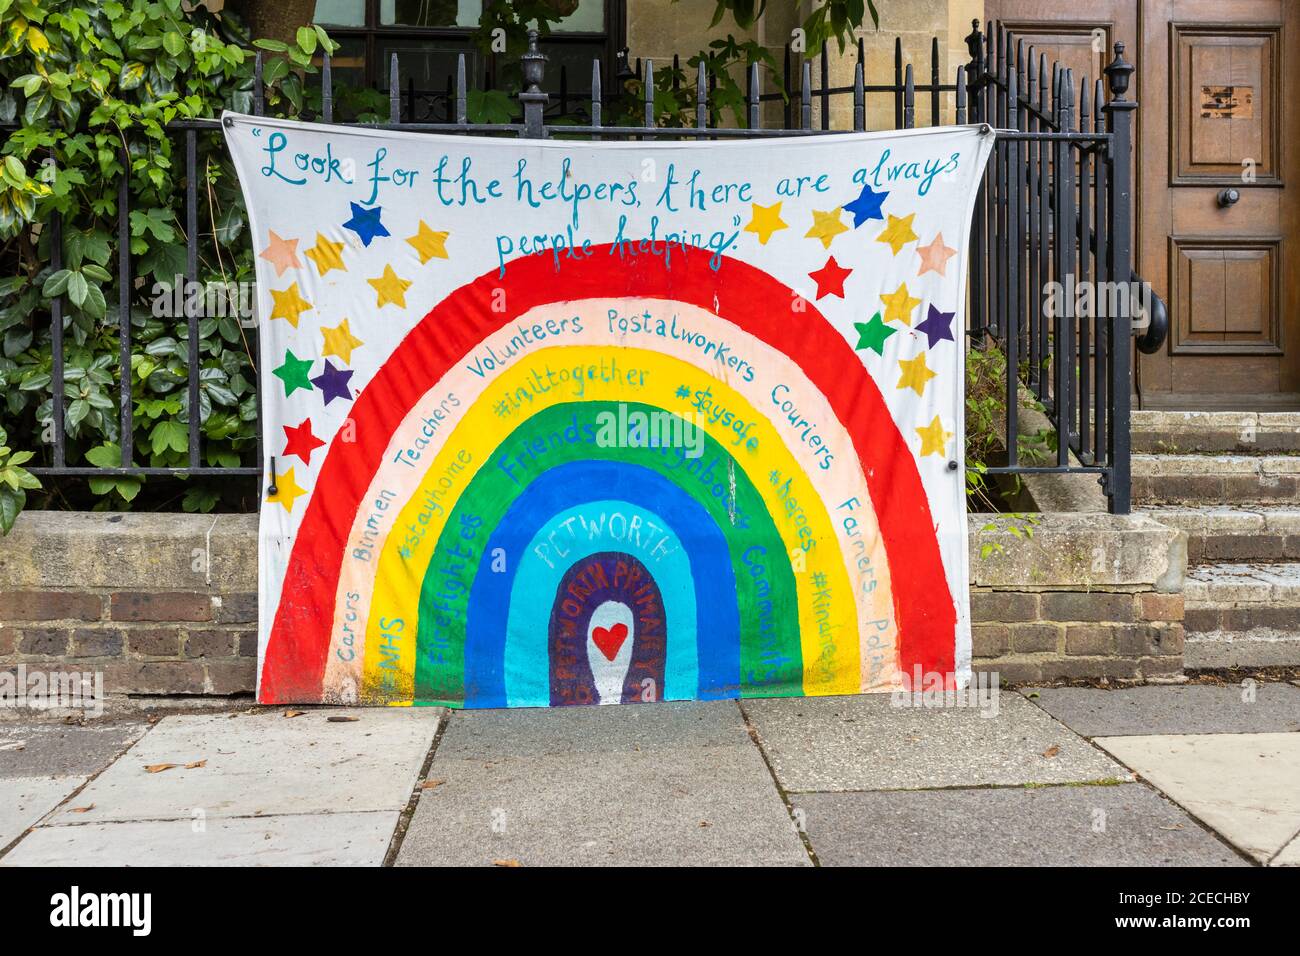 Banner pandemico coronavirus: Banner arcobaleno che ringrazia i lavoratori chiave esposti a Petworth, una città del Sussex occidentale, nel sud-est dell'Inghilterra Foto Stock